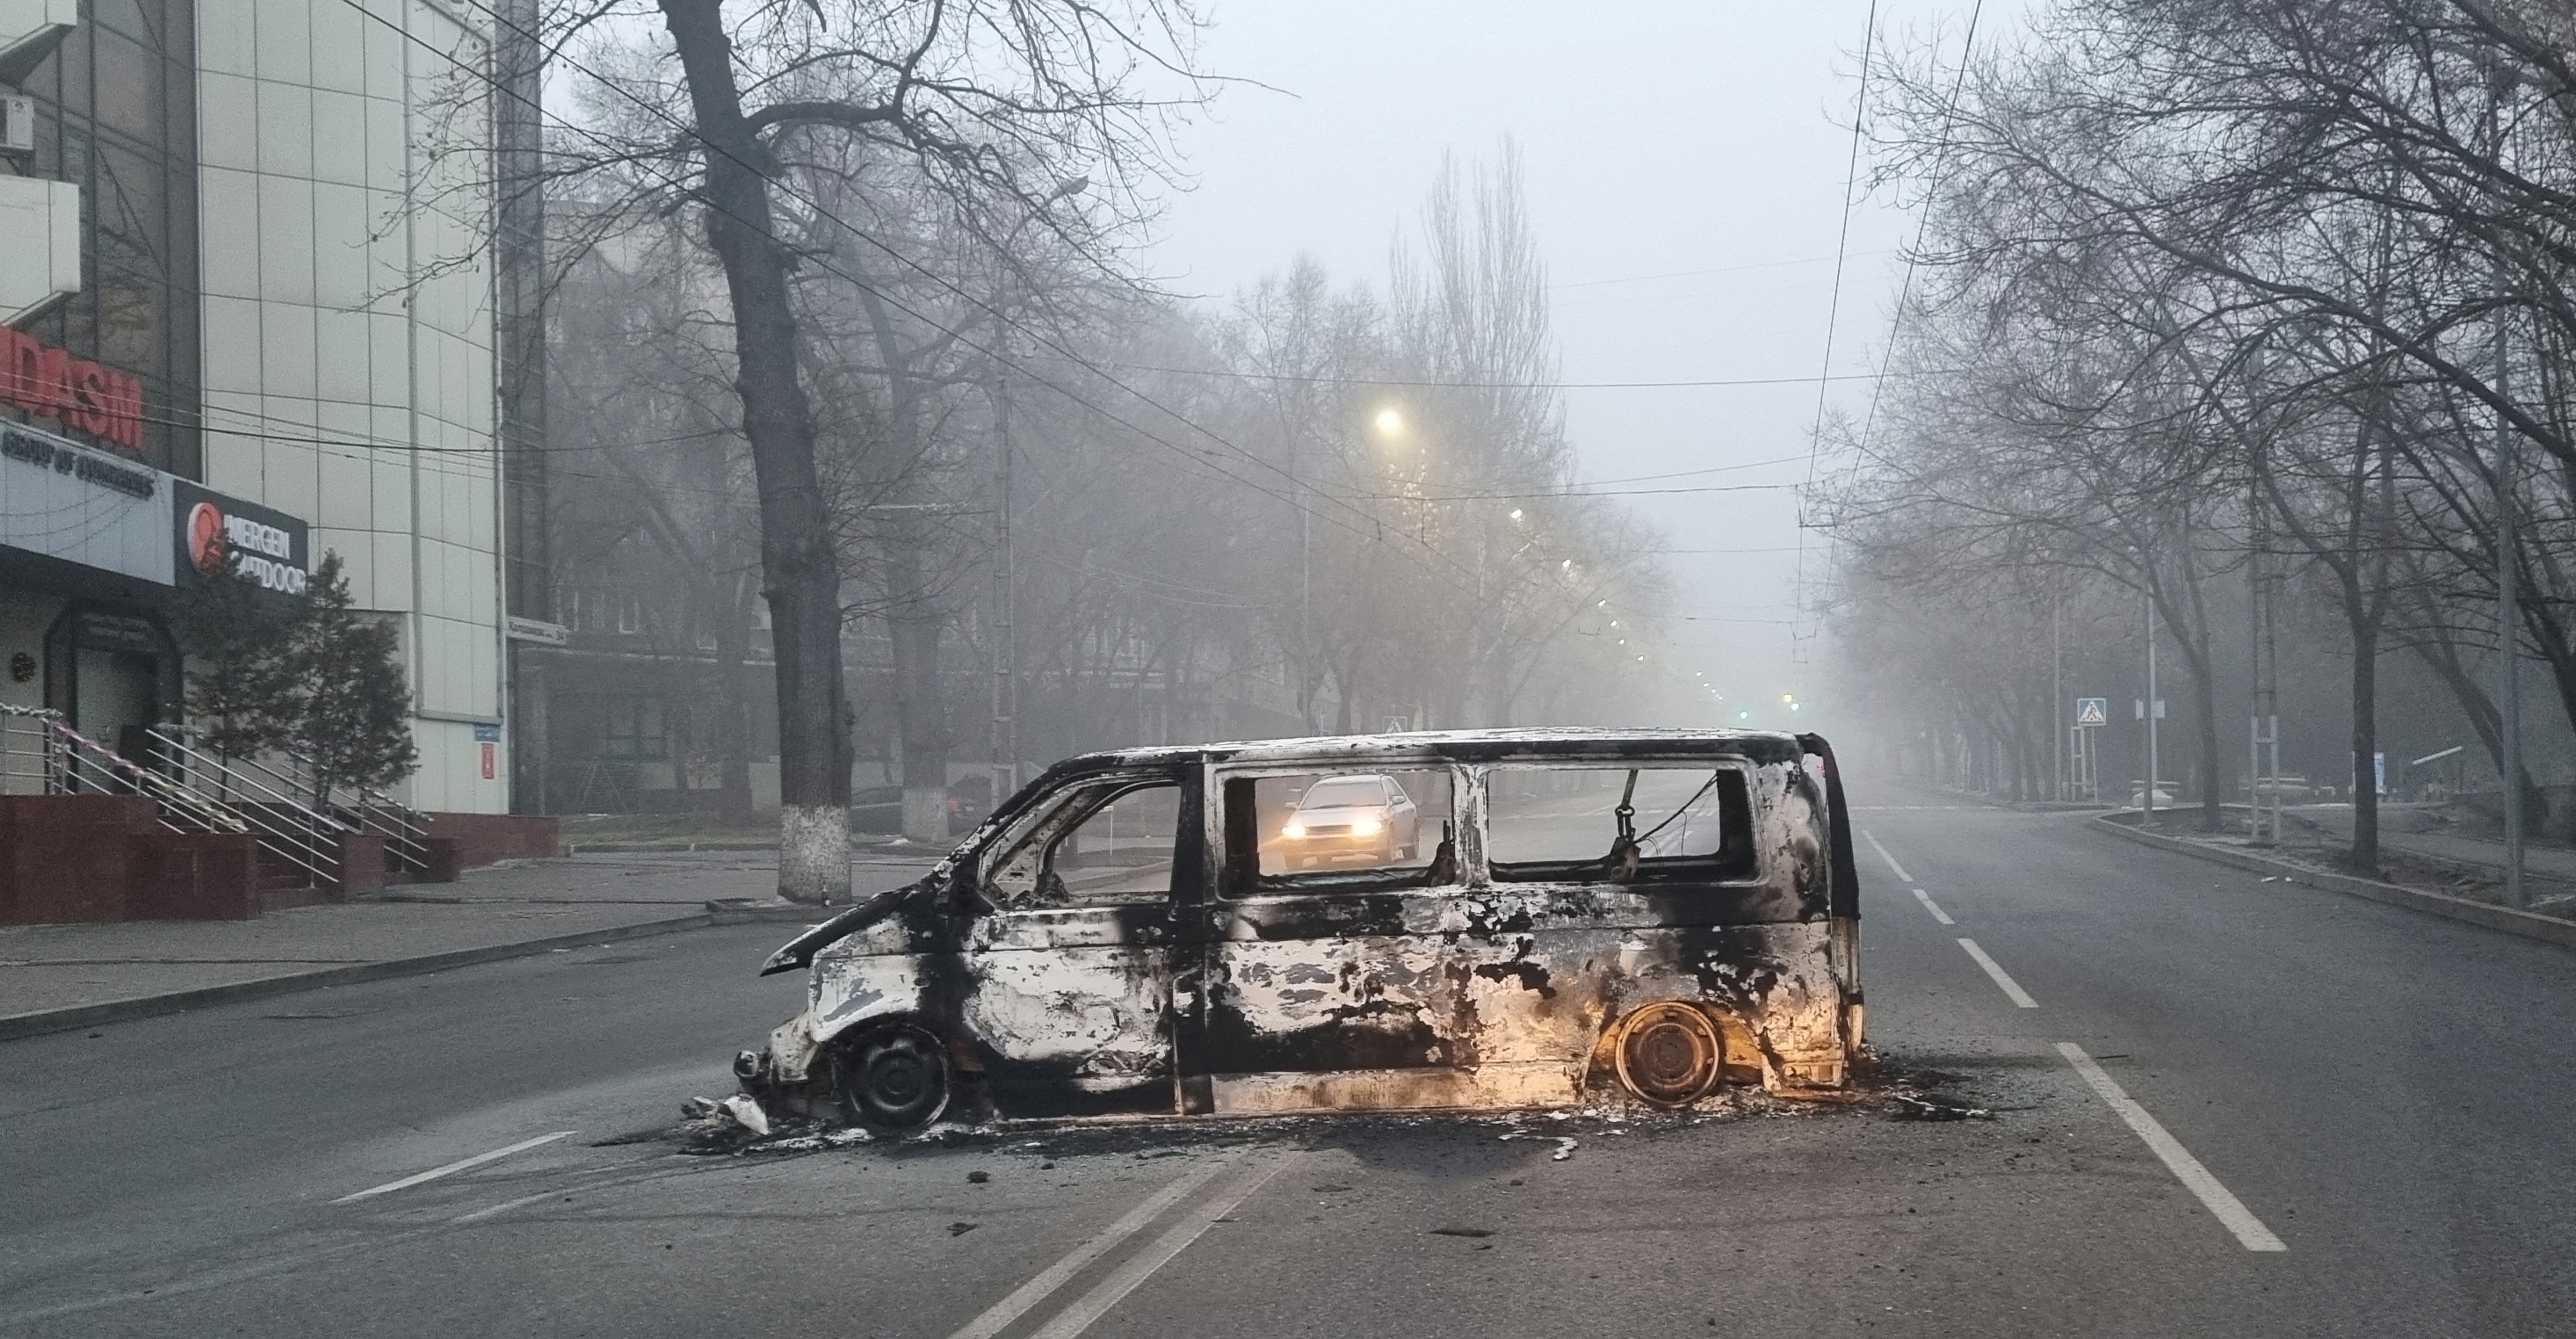 Một chiếc xe bị đốt cháy trong cuộc biểu tình do tăng giá nhiên liệu được nhìn thấy trên một con đường ở Almaty, Kazakhstan ngày 6 tháng 1 năm 2022. REUTERS / Pavel Mikheyev